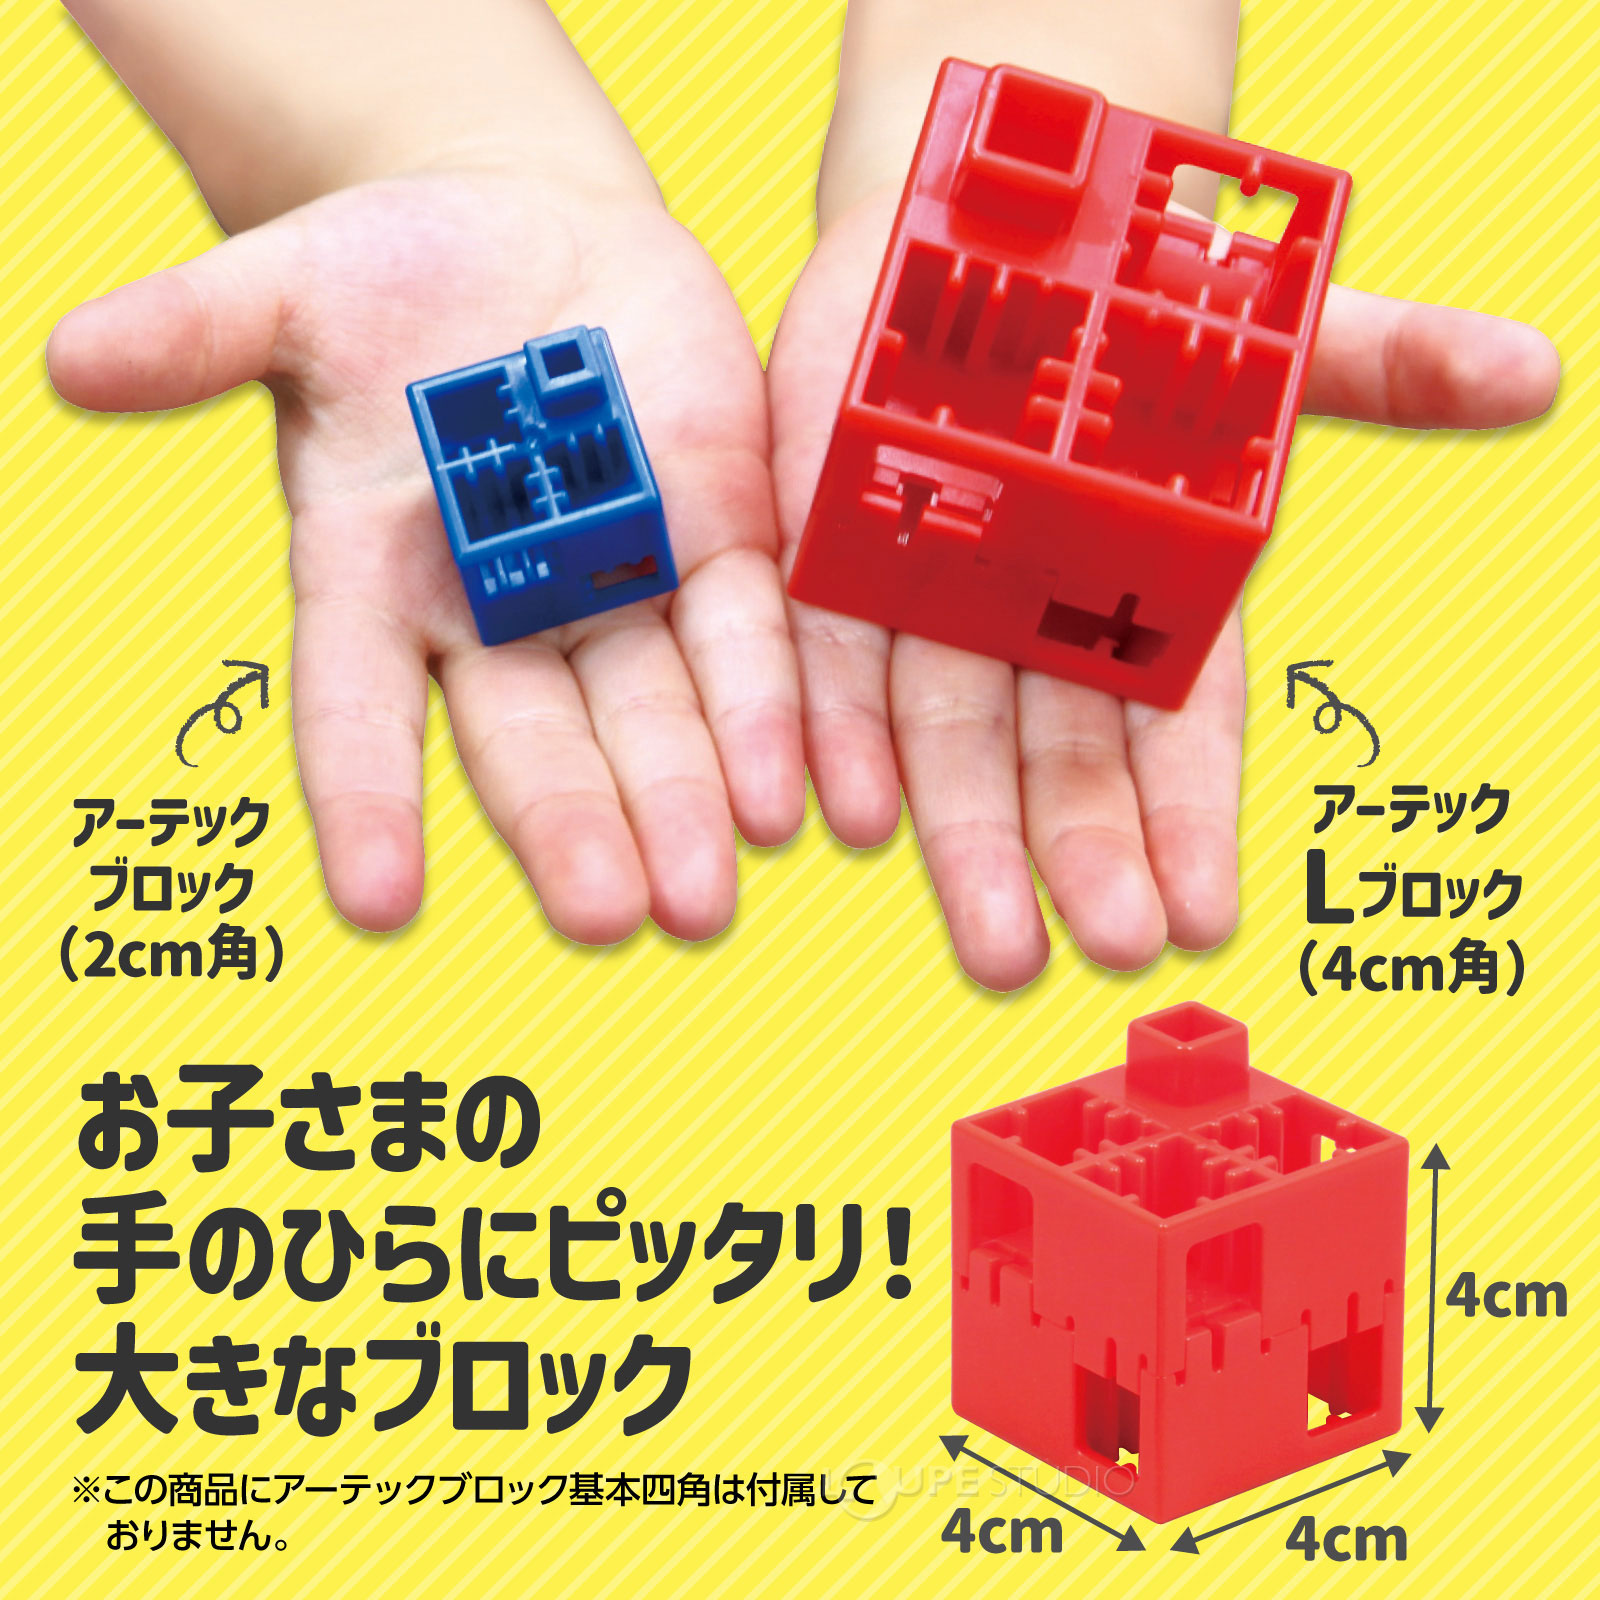 アーテックブロック L ブロック おもちゃ マスセット120ピース 日本製 